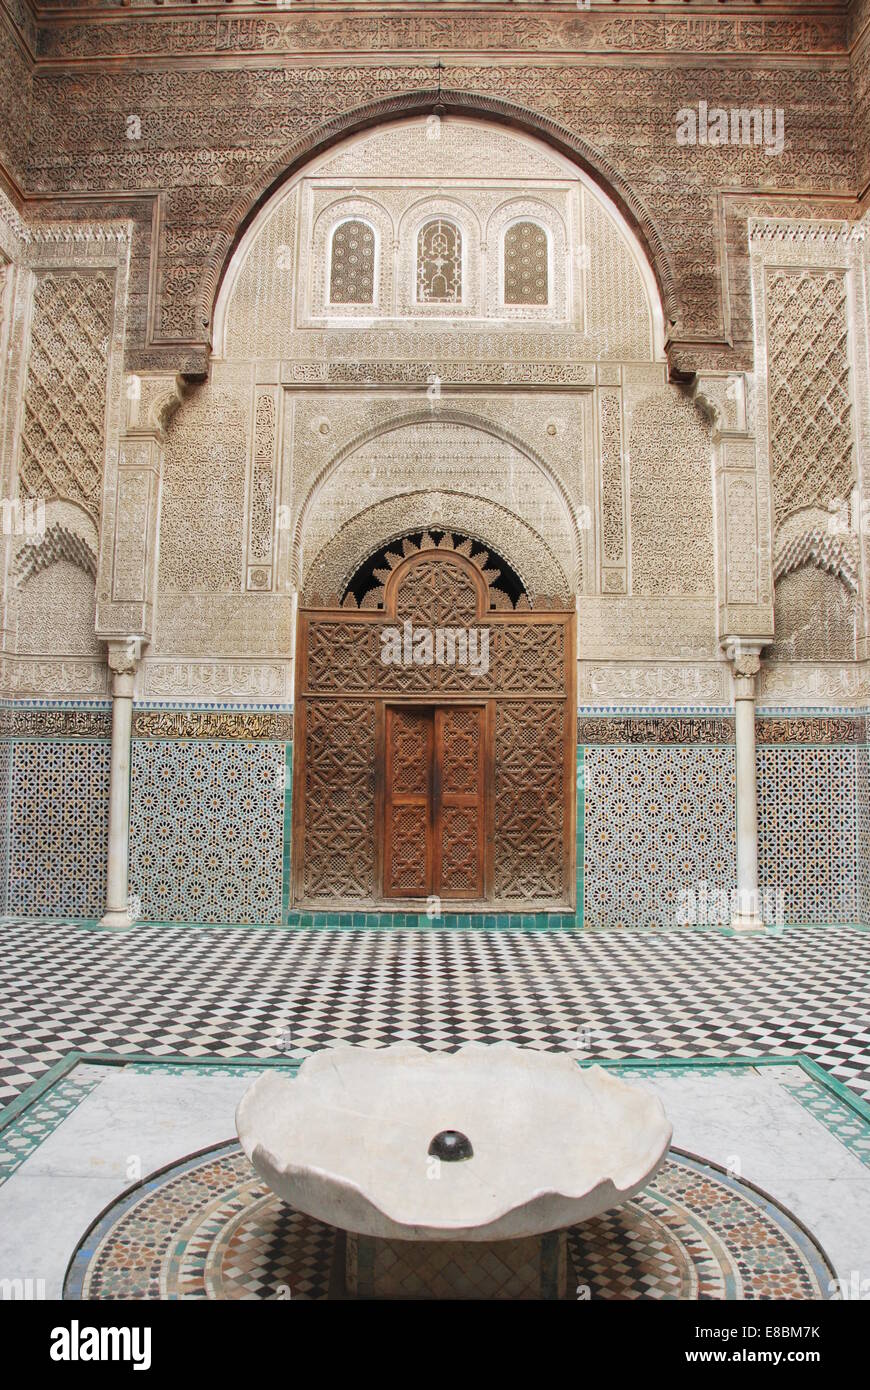 Il Marocco . Fez. Medina, edificio religioso. Piastrelle. Islamico. Pareti scolpite. Archi. UNESCO - Sito Patrimonio dell'umanità. Legno intagliato. Foto Stock